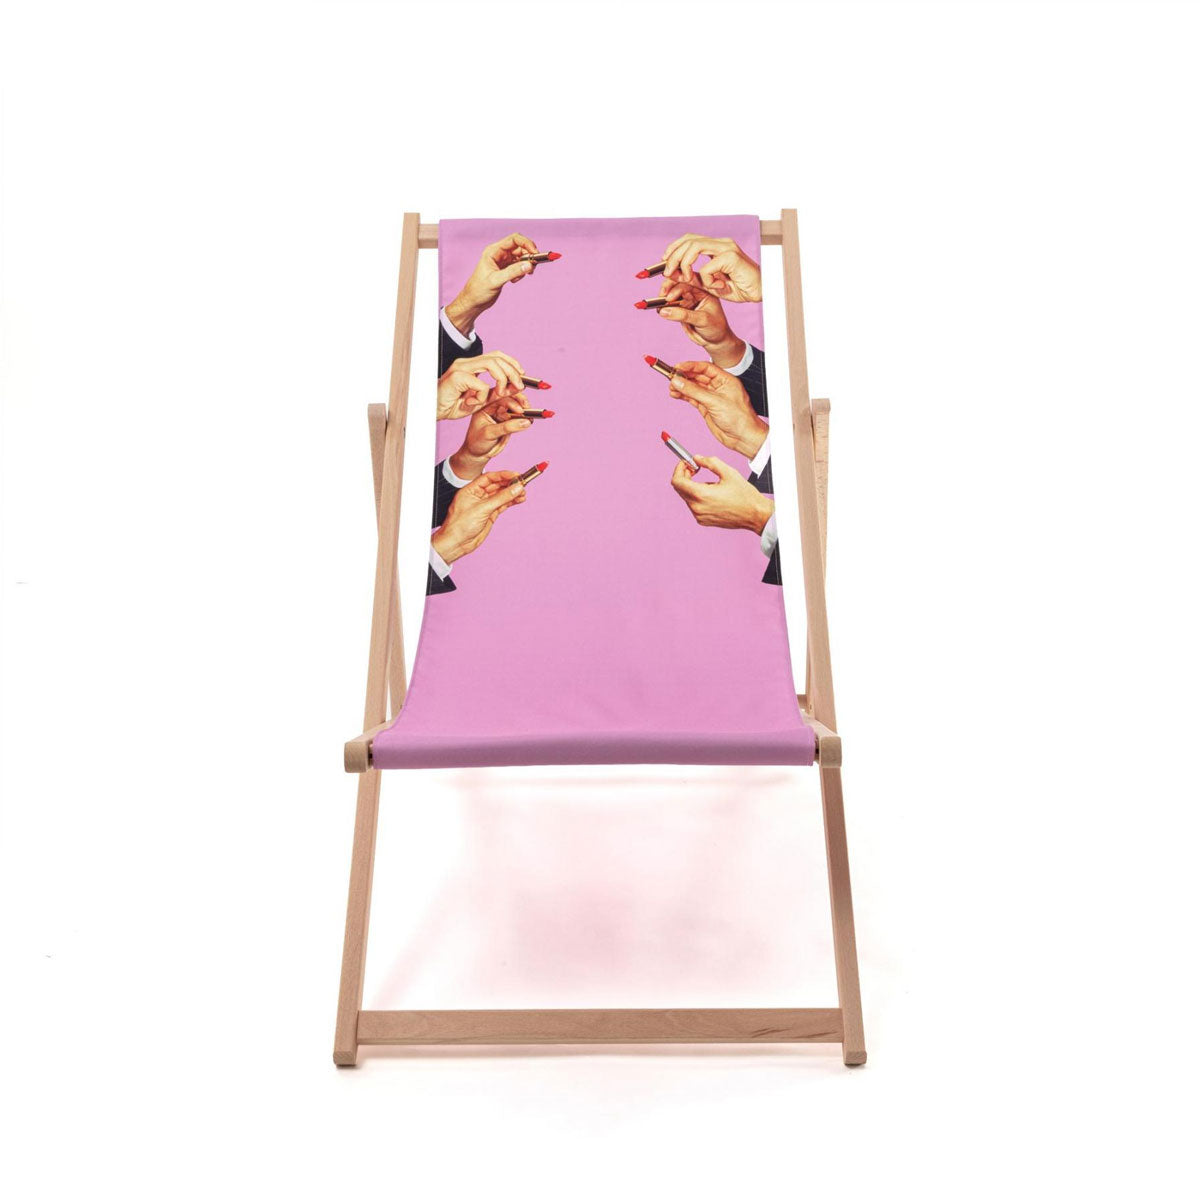 Seletti X Toiletpaper &#39;Lipsticks Pink&#39; Deck Chair